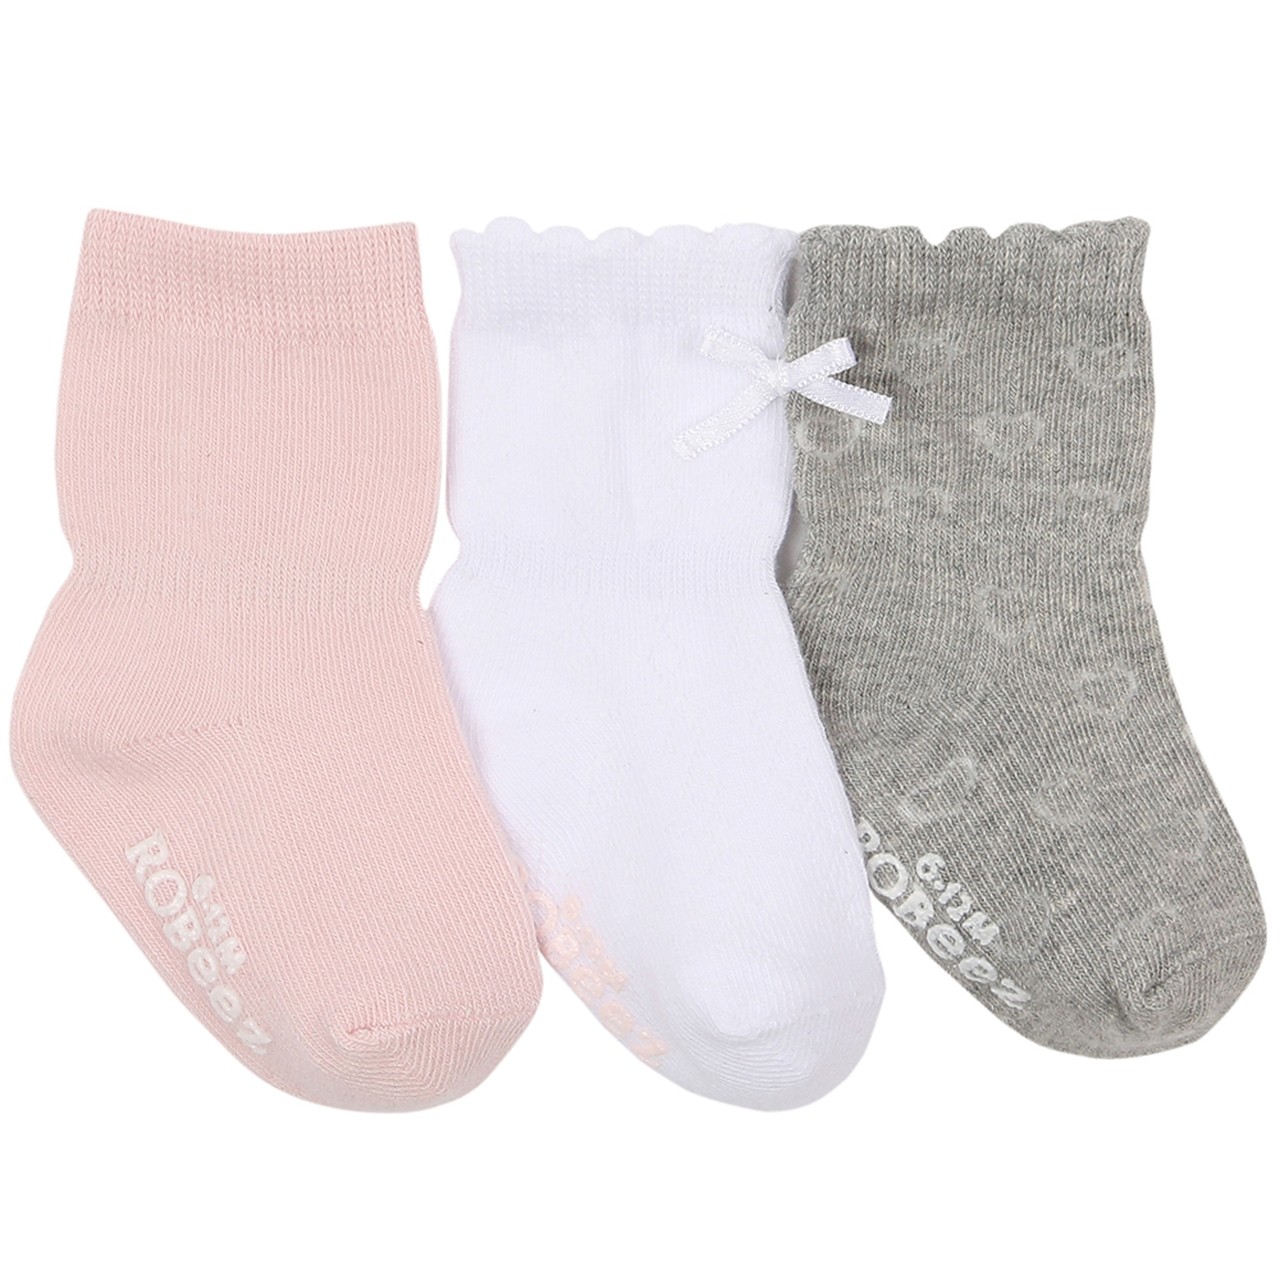 Robeez Infant/Toddler Baby Girl Kickproof Non-Slip Socks 3 Pack